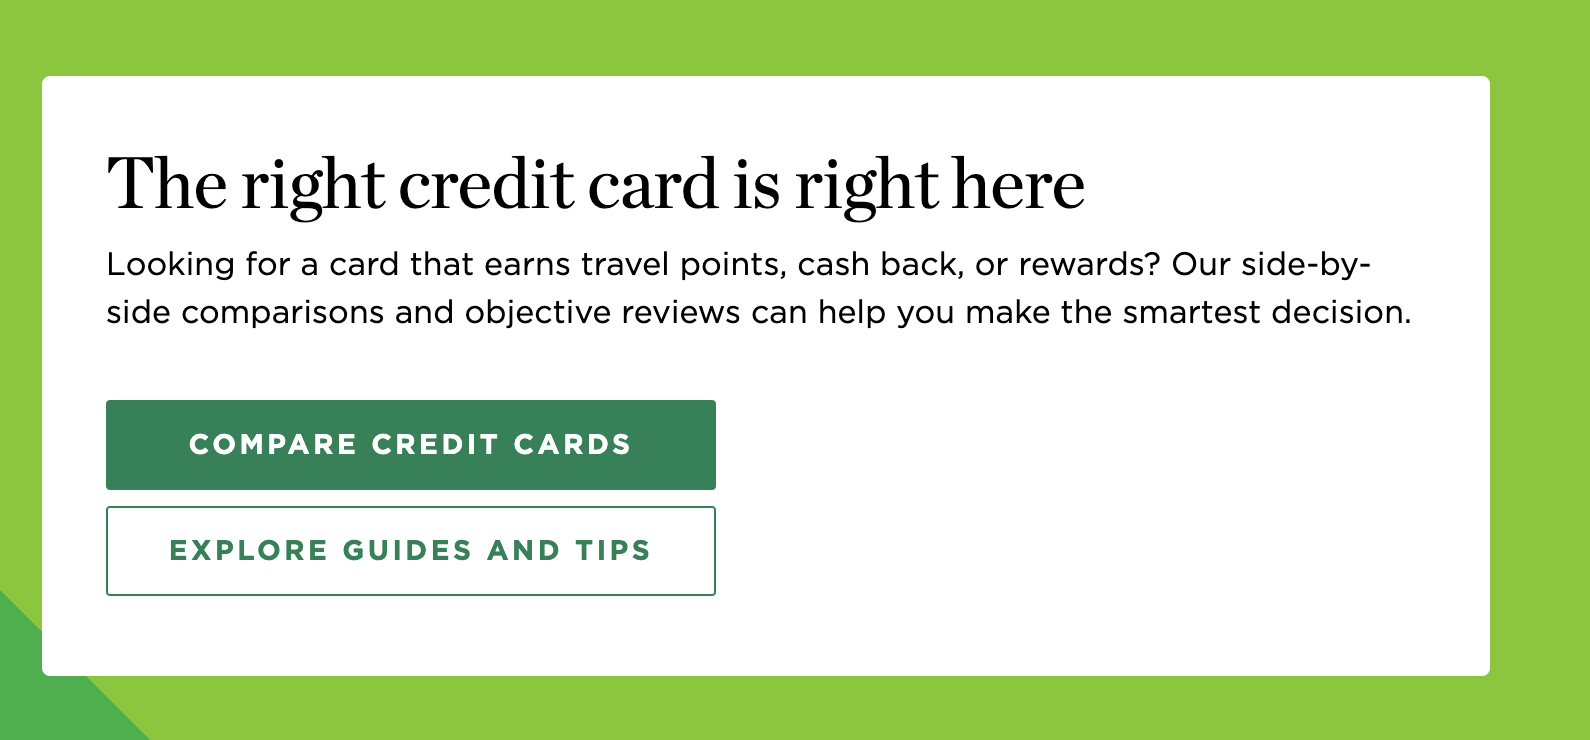 کارت اعتباری مناسب همینجاست.  به دنبال کارتی هستید که امتیاز سفر، بازپرداخت نقدی یا جوایز را به دست آورد؟  مقایسه‌های جانبی و بررسی‌های عینی ما می‌تواند به شما در اتخاذ هوشمندانه‌ترین تصمیم کمک کند.  دکمه اول: مقایسه کارت های اعتباری.  دکمه دوم: راهنماها و نکات را کاوش کنید.